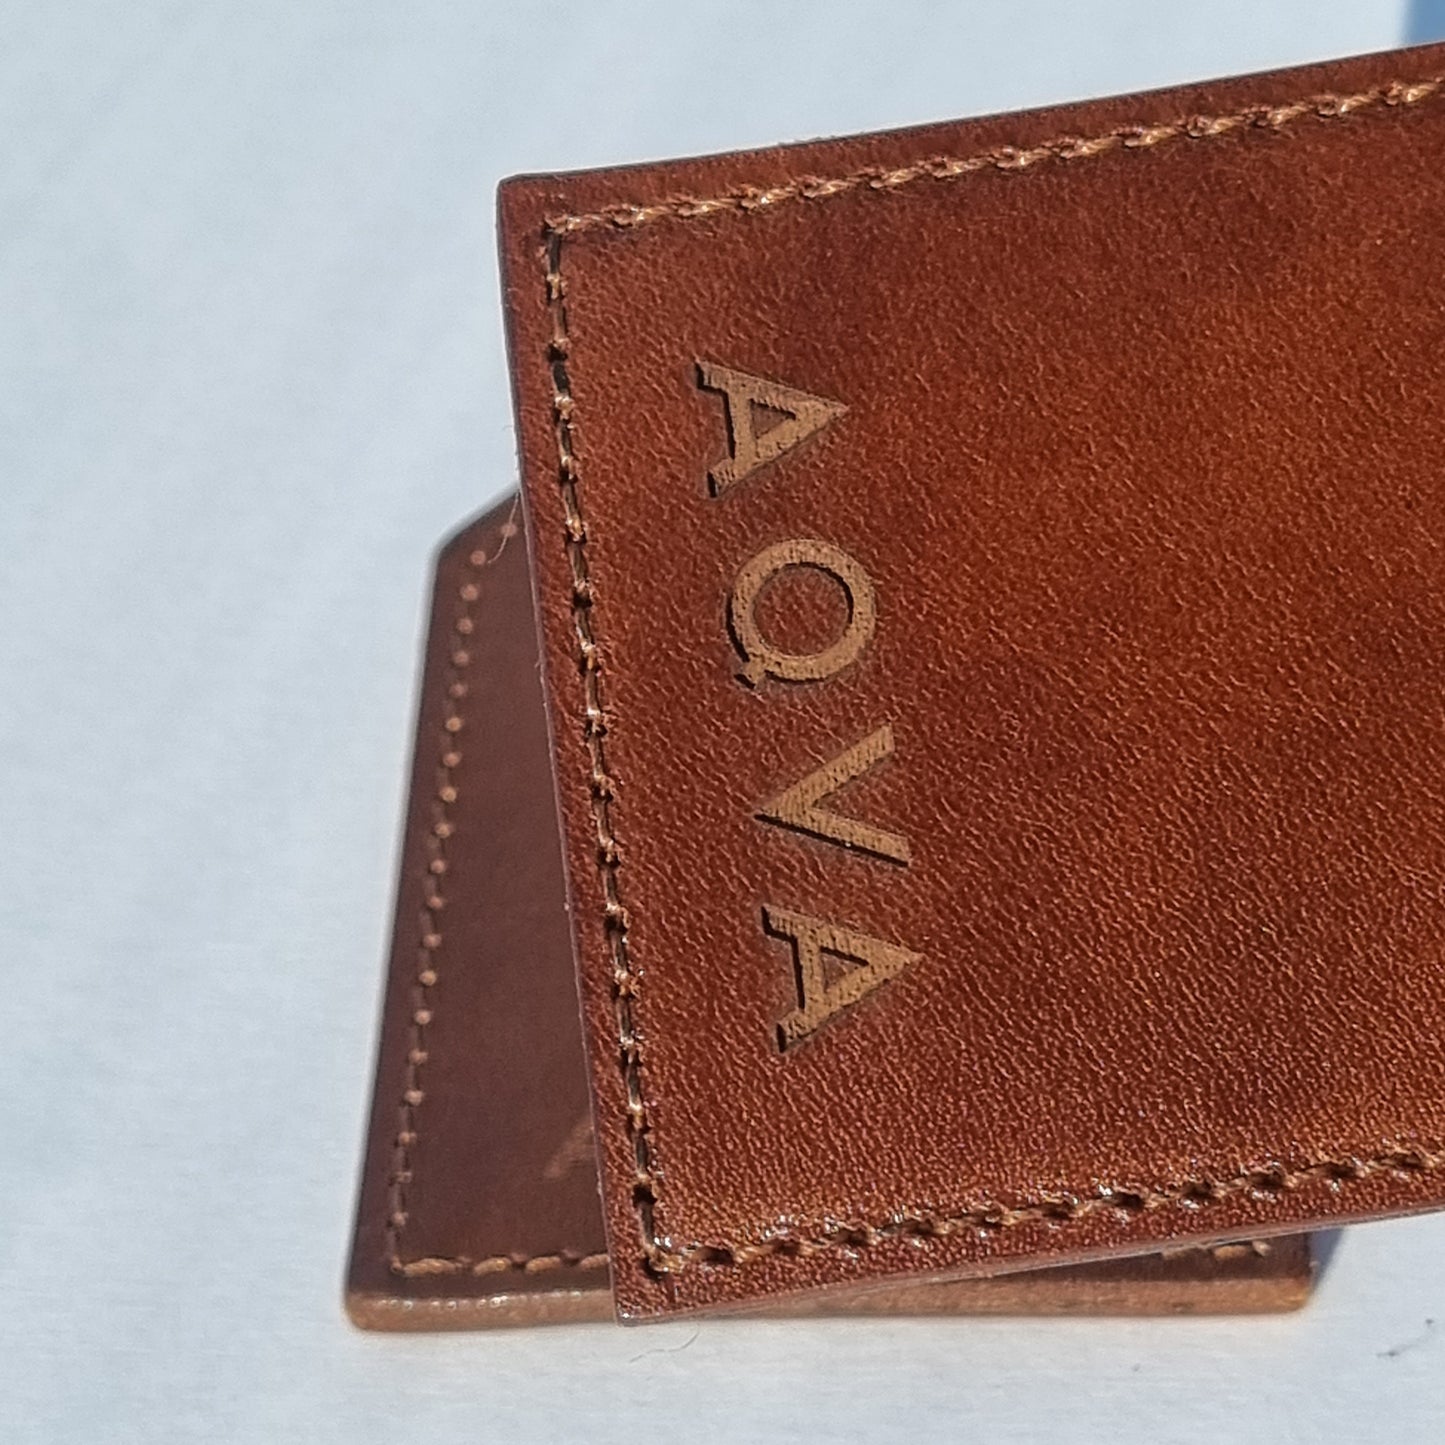 Villini x Aqva - Bespoke leather keyring